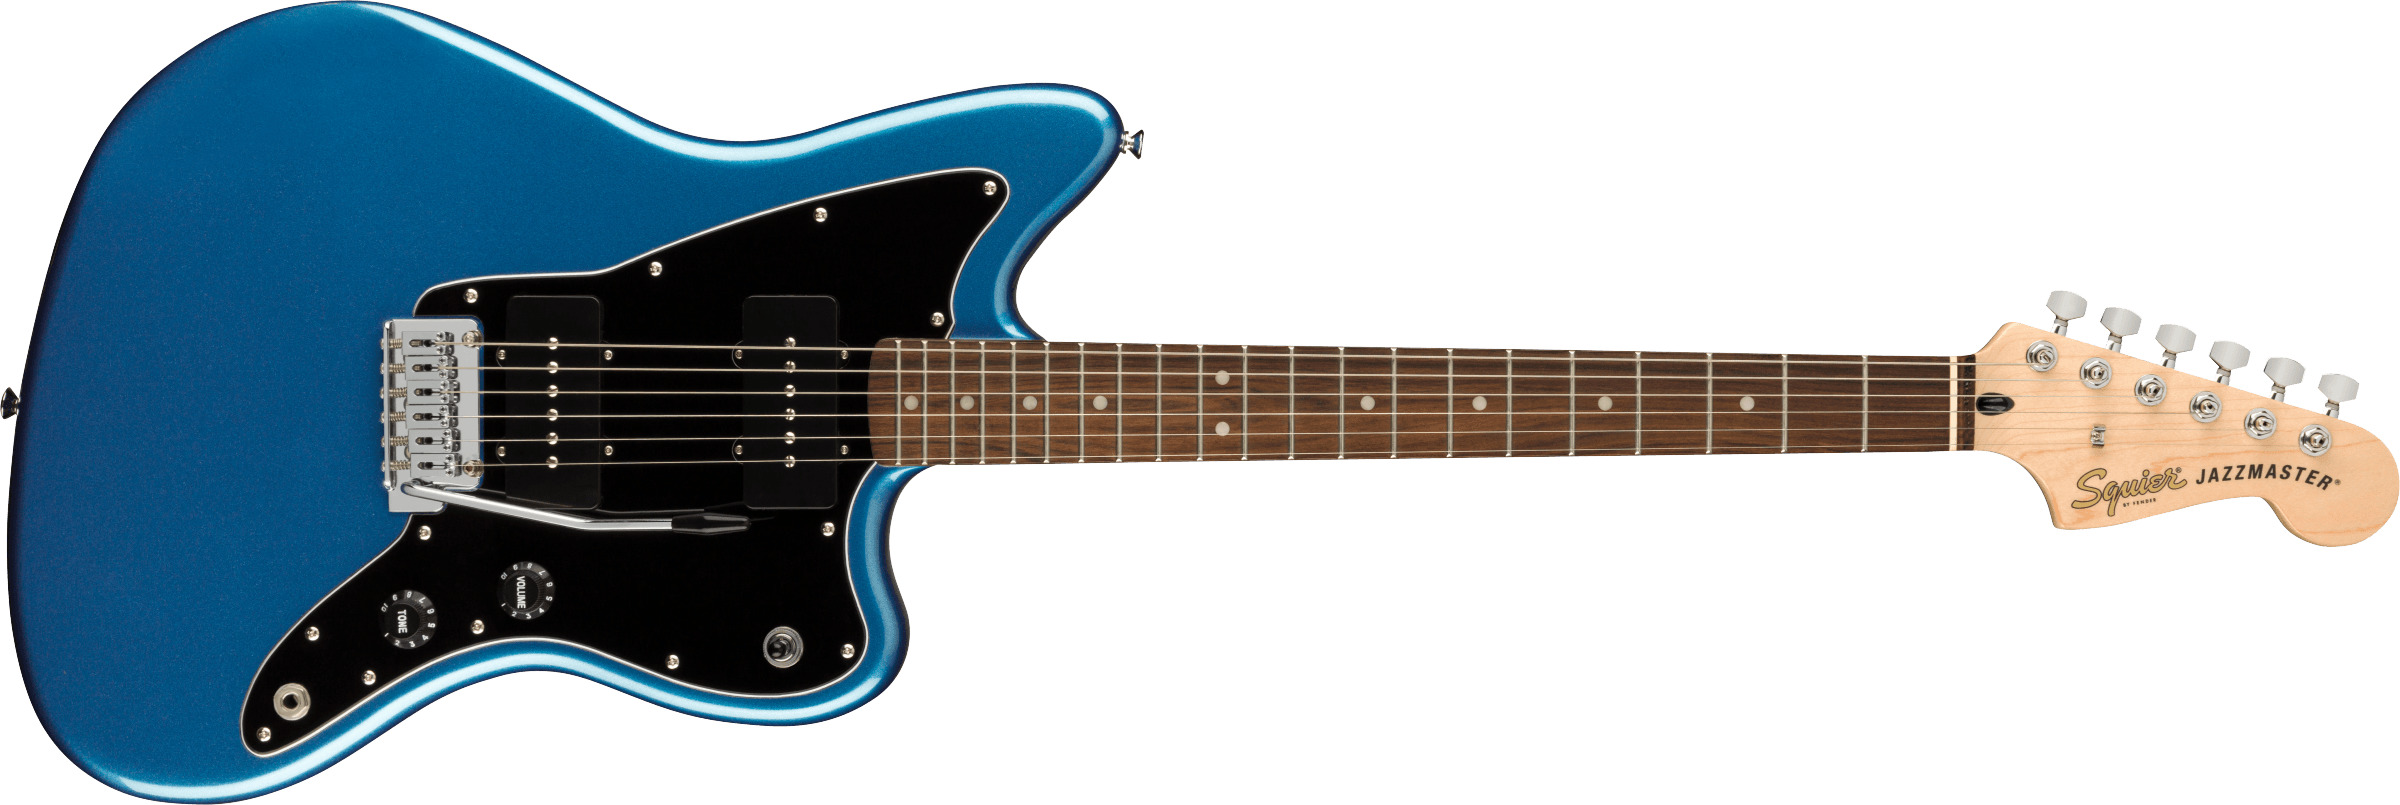 Billede af Fender Squier Affinity Jazzmaster El-guitar (Lake Placid Blue)